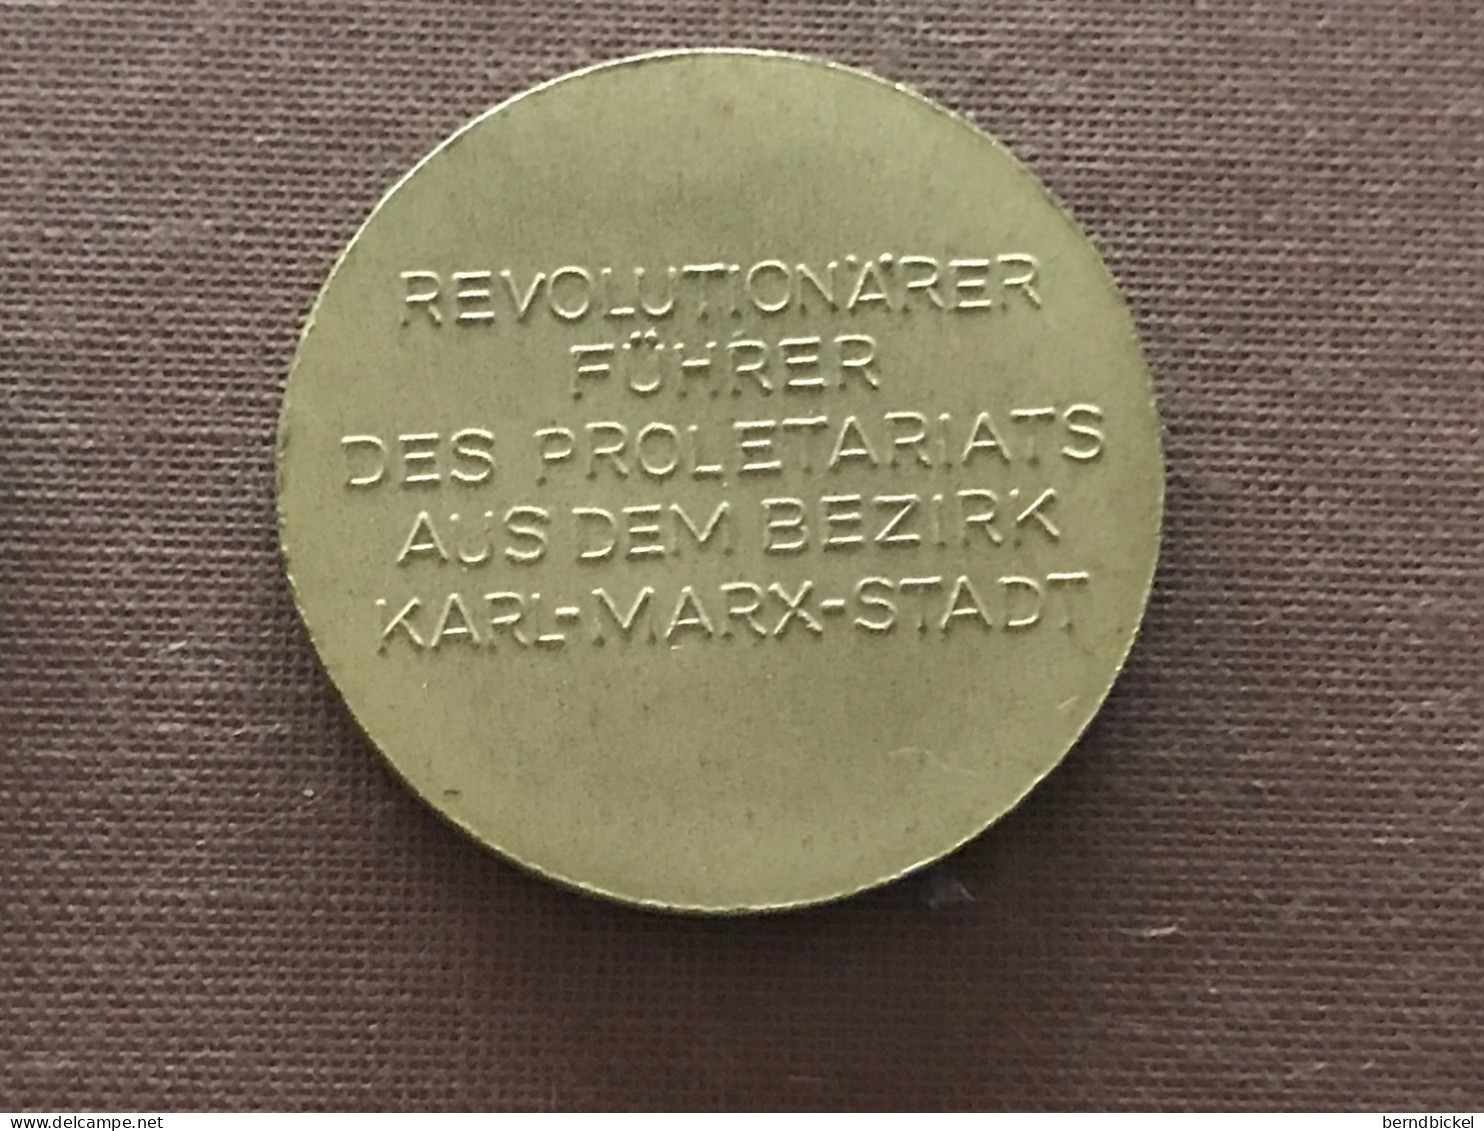 Münze Münzen Medaille DDR Bernd Schneller Revolutionärer Führer - Royaux/De Noblesse